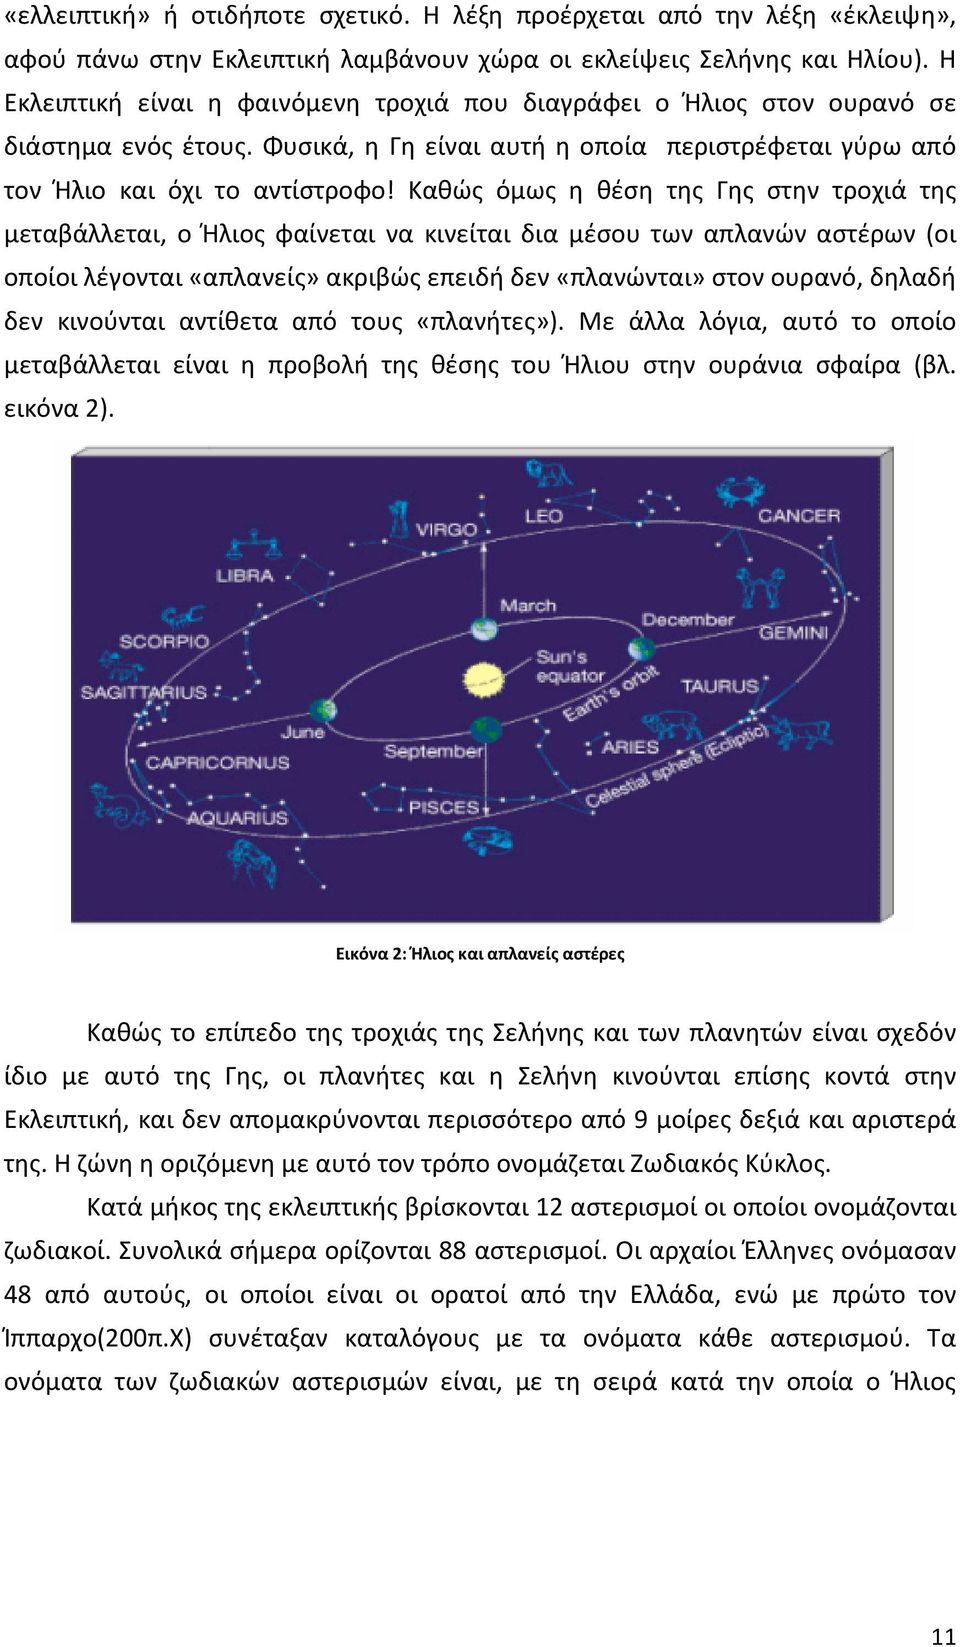 Καθώς όμως η θέση της Γης στην τροχιά της μεταβάλλεται, ο Ήλιος φαίνεται να κινείται δια μέσου των απλανών αστέρων (οι οποίοι λέγονται «απλανείς» ακριβώς επειδή δεν «πλανώνται» στον ουρανό, δηλαδή